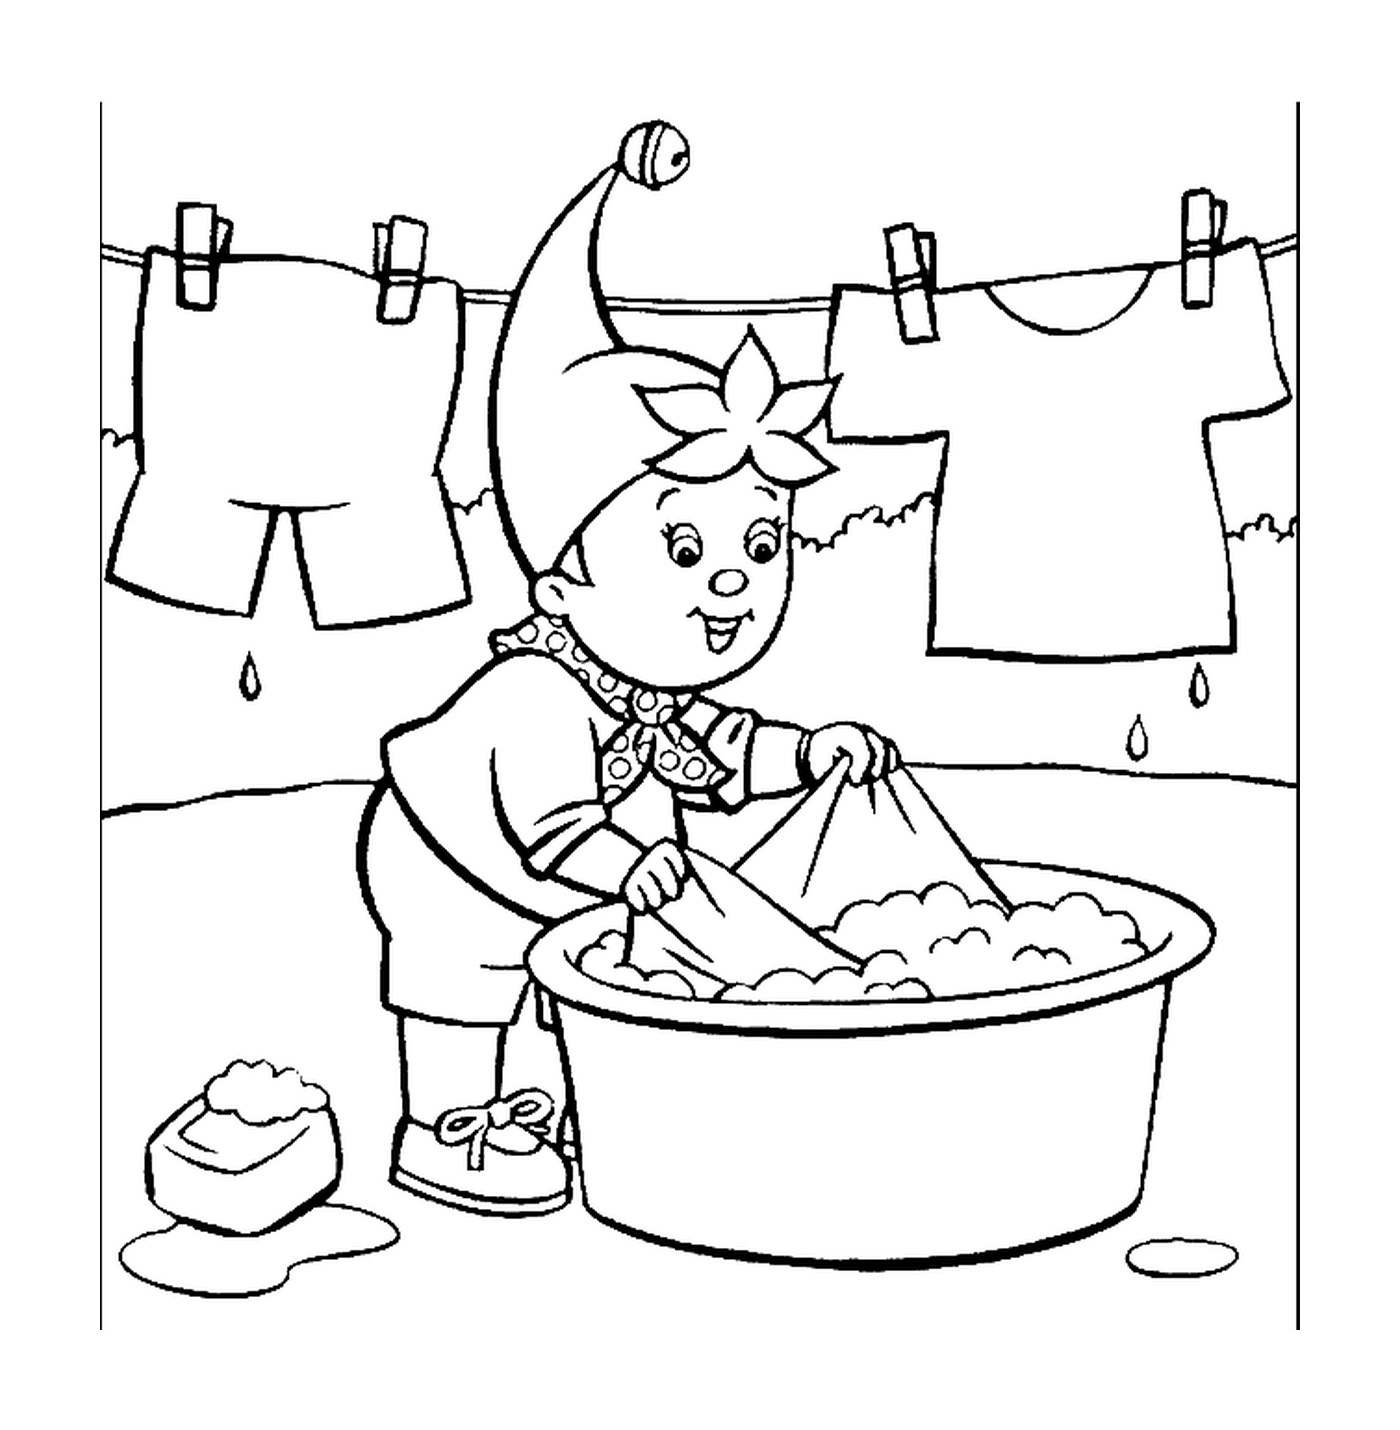   Oui Oui lave son linge, gnome travailleur 